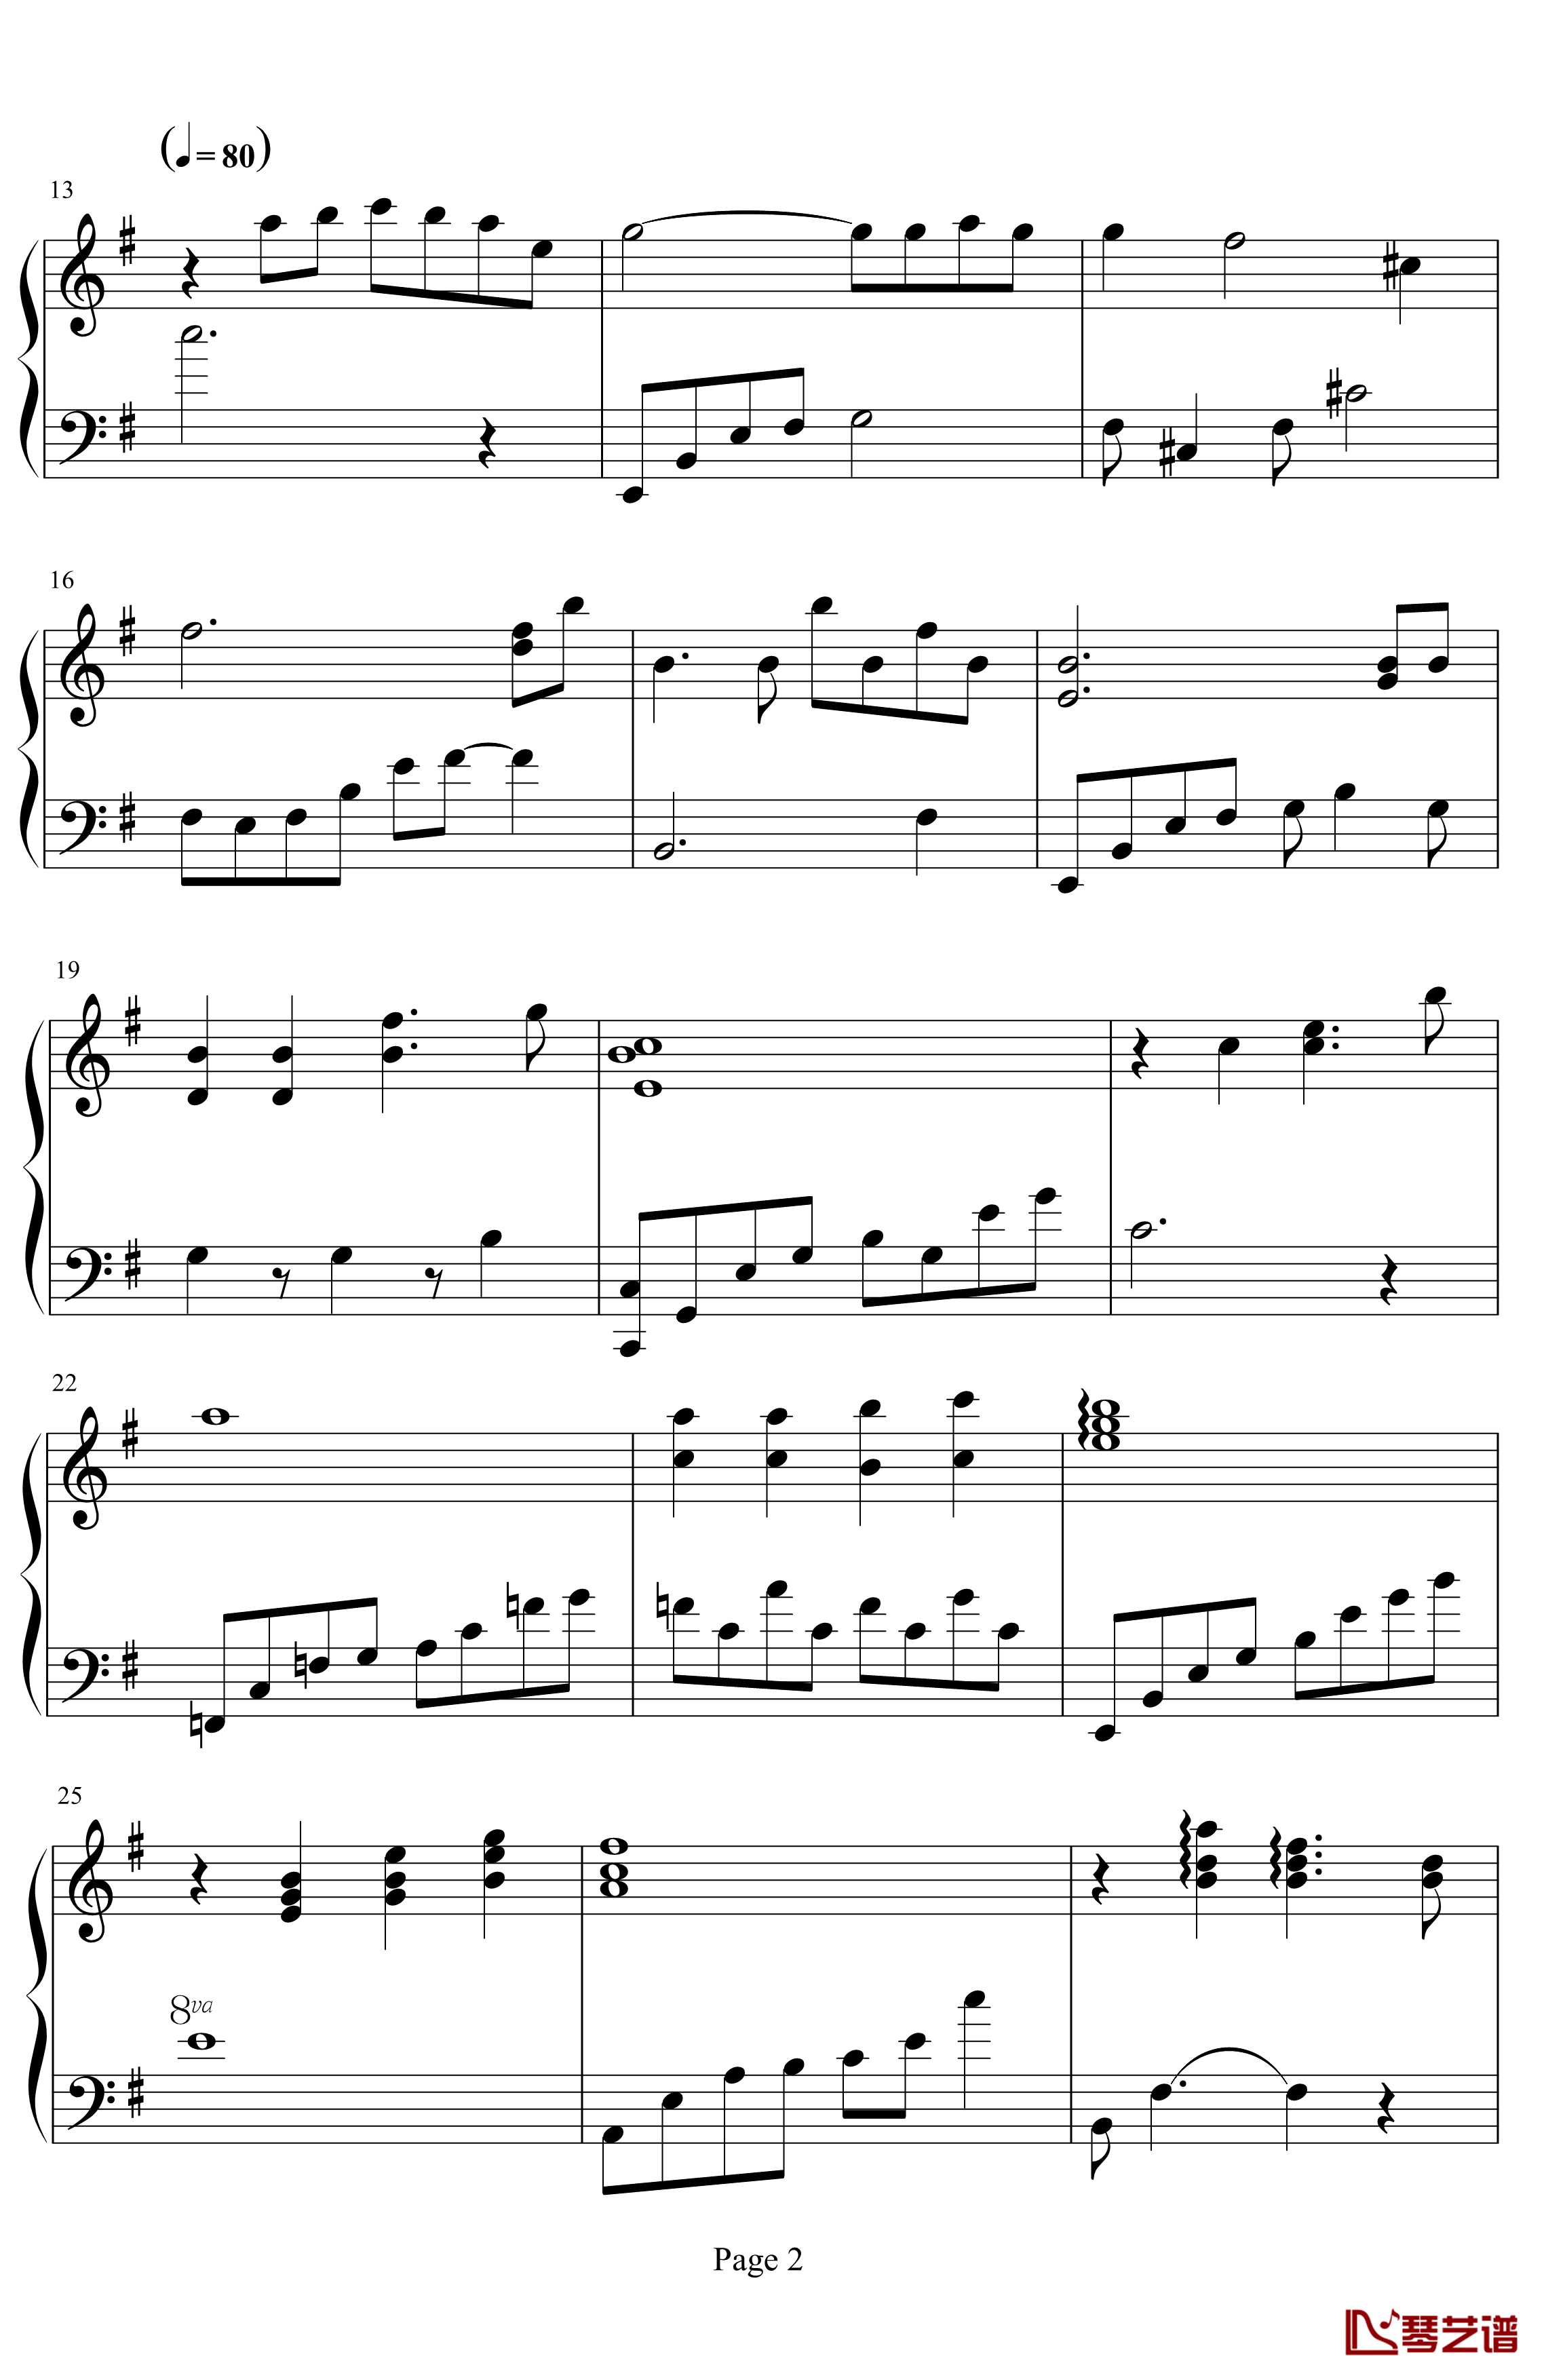 休闲小曲钢琴谱-xxmm1112